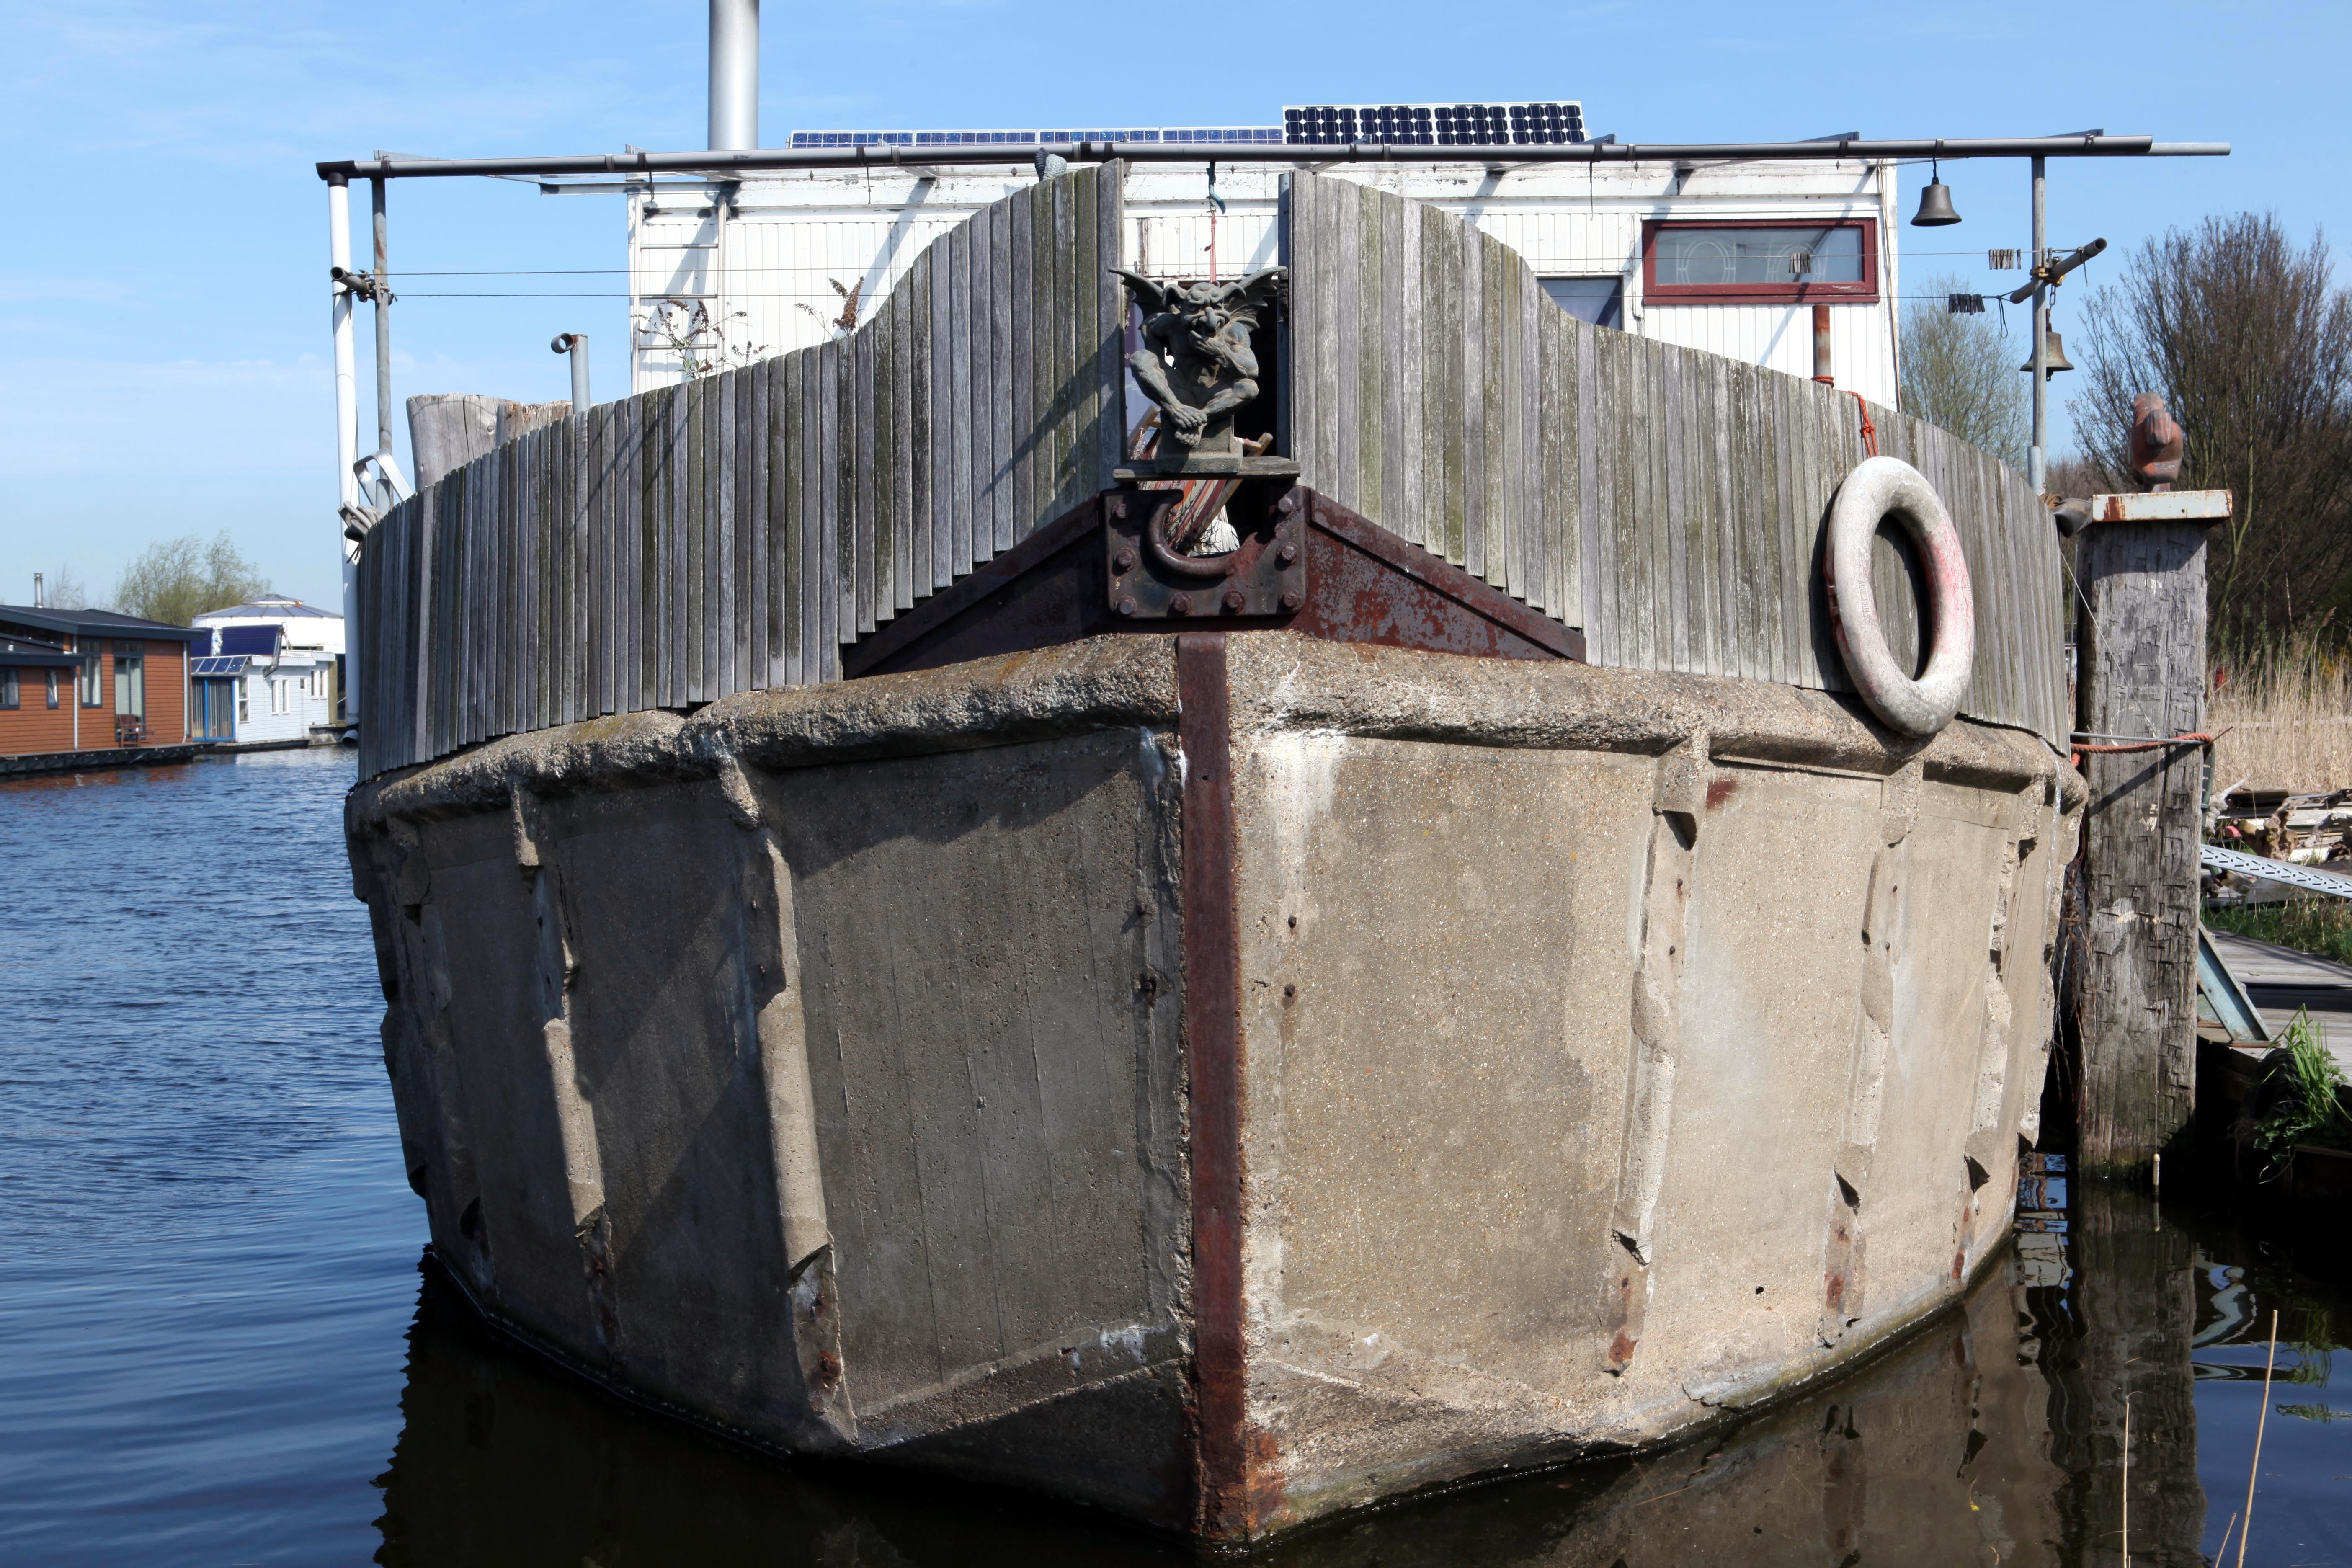 File:Concrete barge boat ship - Flickr - Joost J. Bakker 